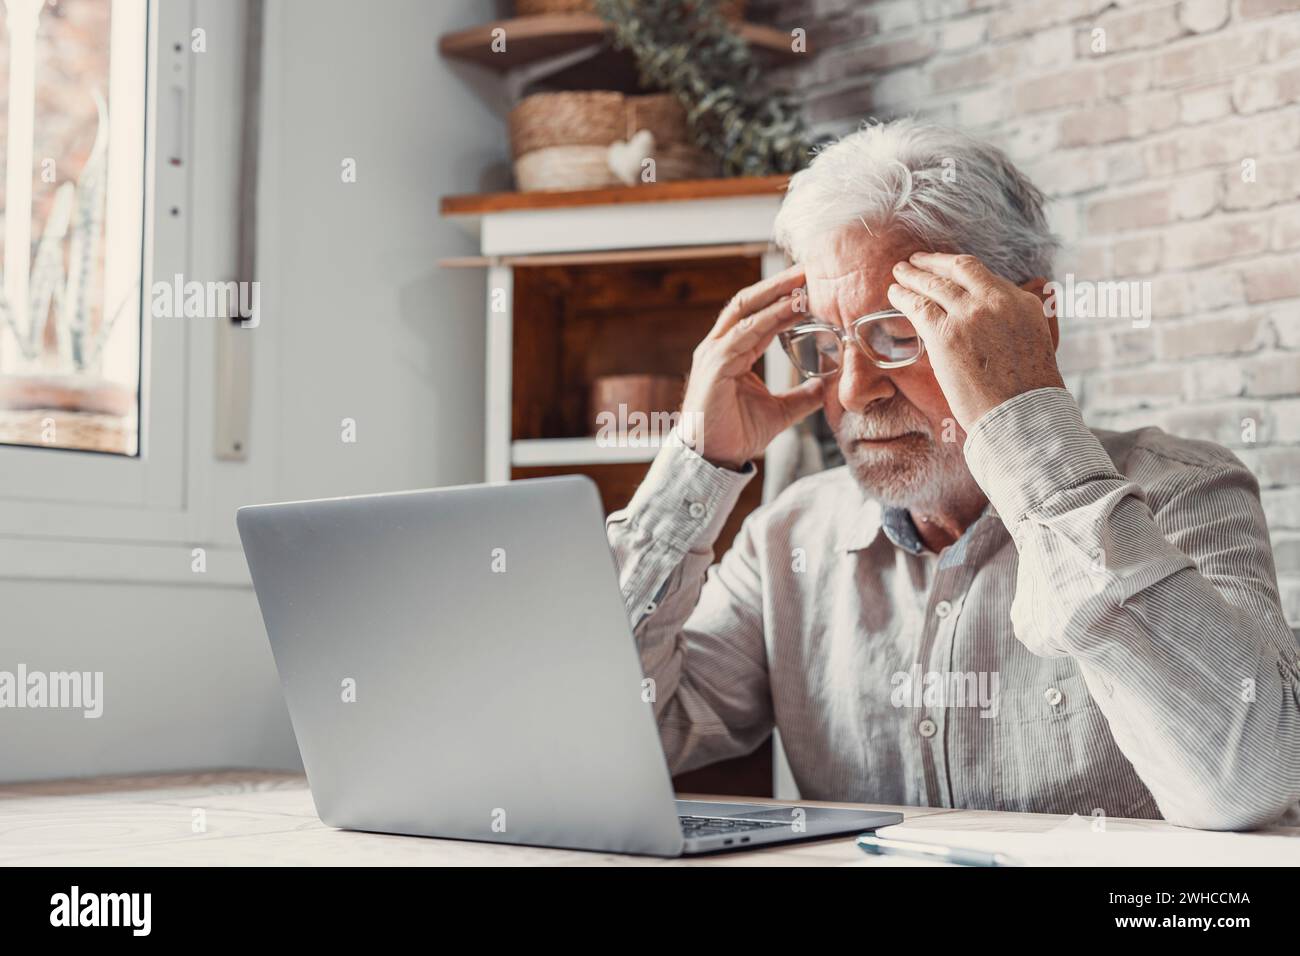 Homme fatigué mature des années 70 travaillant à l'ordinateur portable de la maison, enlevant les lunettes, touchant la tête et les yeux. Vieil homme retraité souffrant de maux de tête, vertiges après avoir regardé l'écran d'ordinateur. Problème de vision Banque D'Images